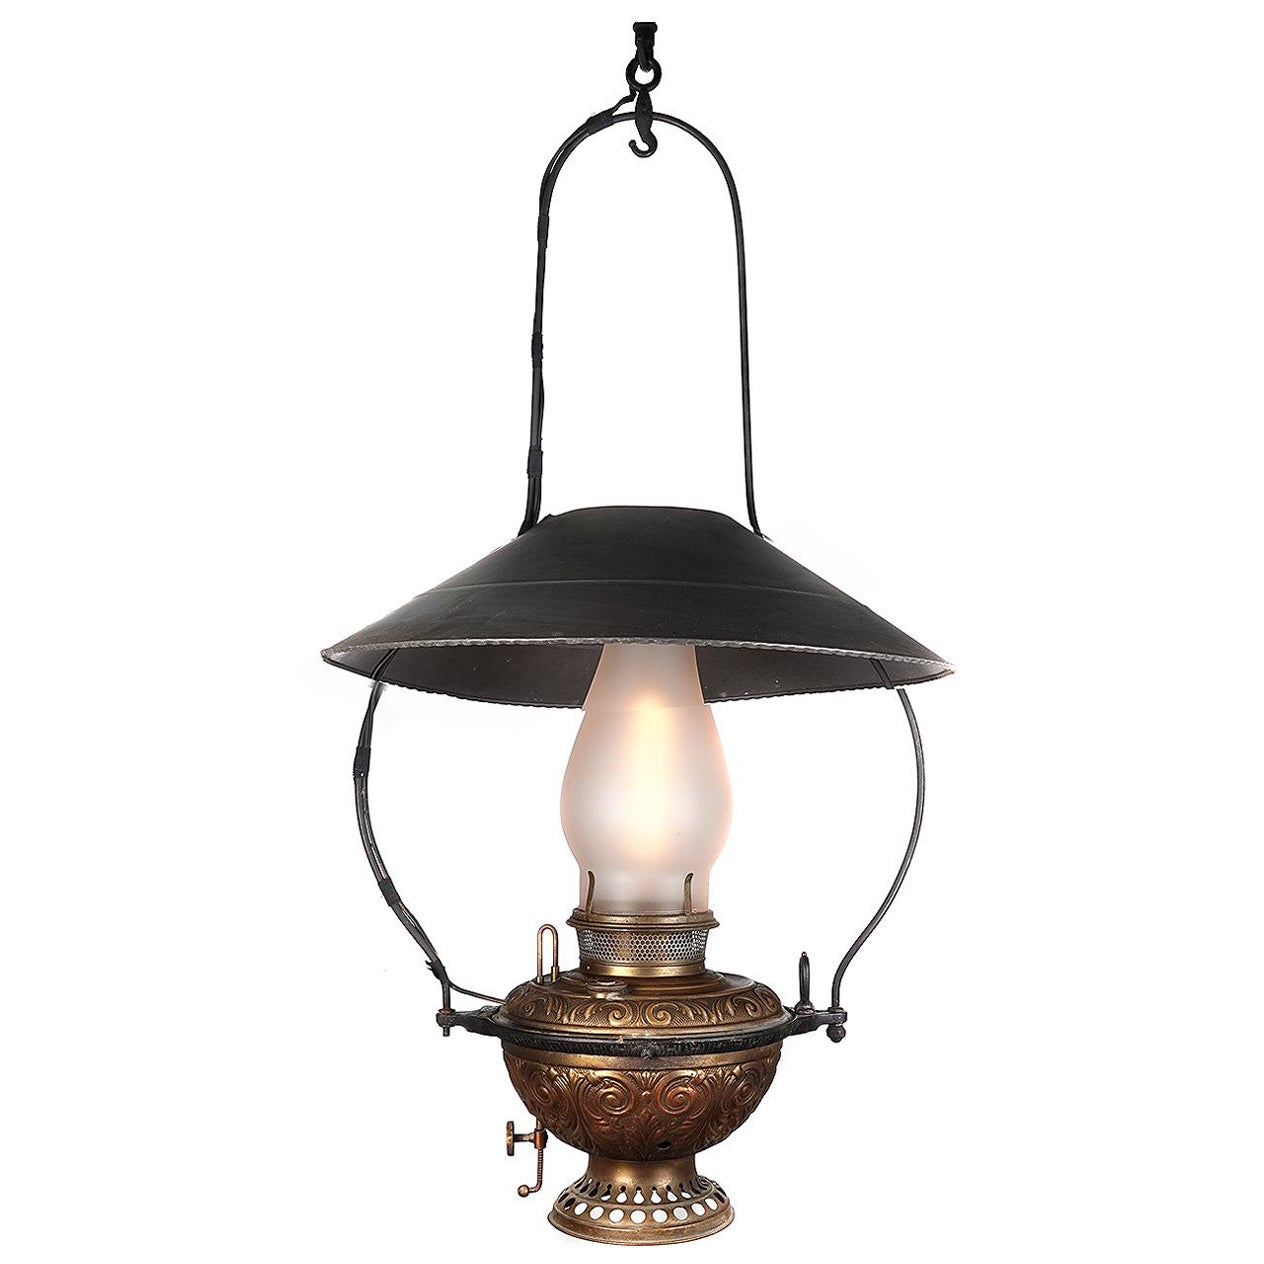 Lampe de saloon classique des années 1800